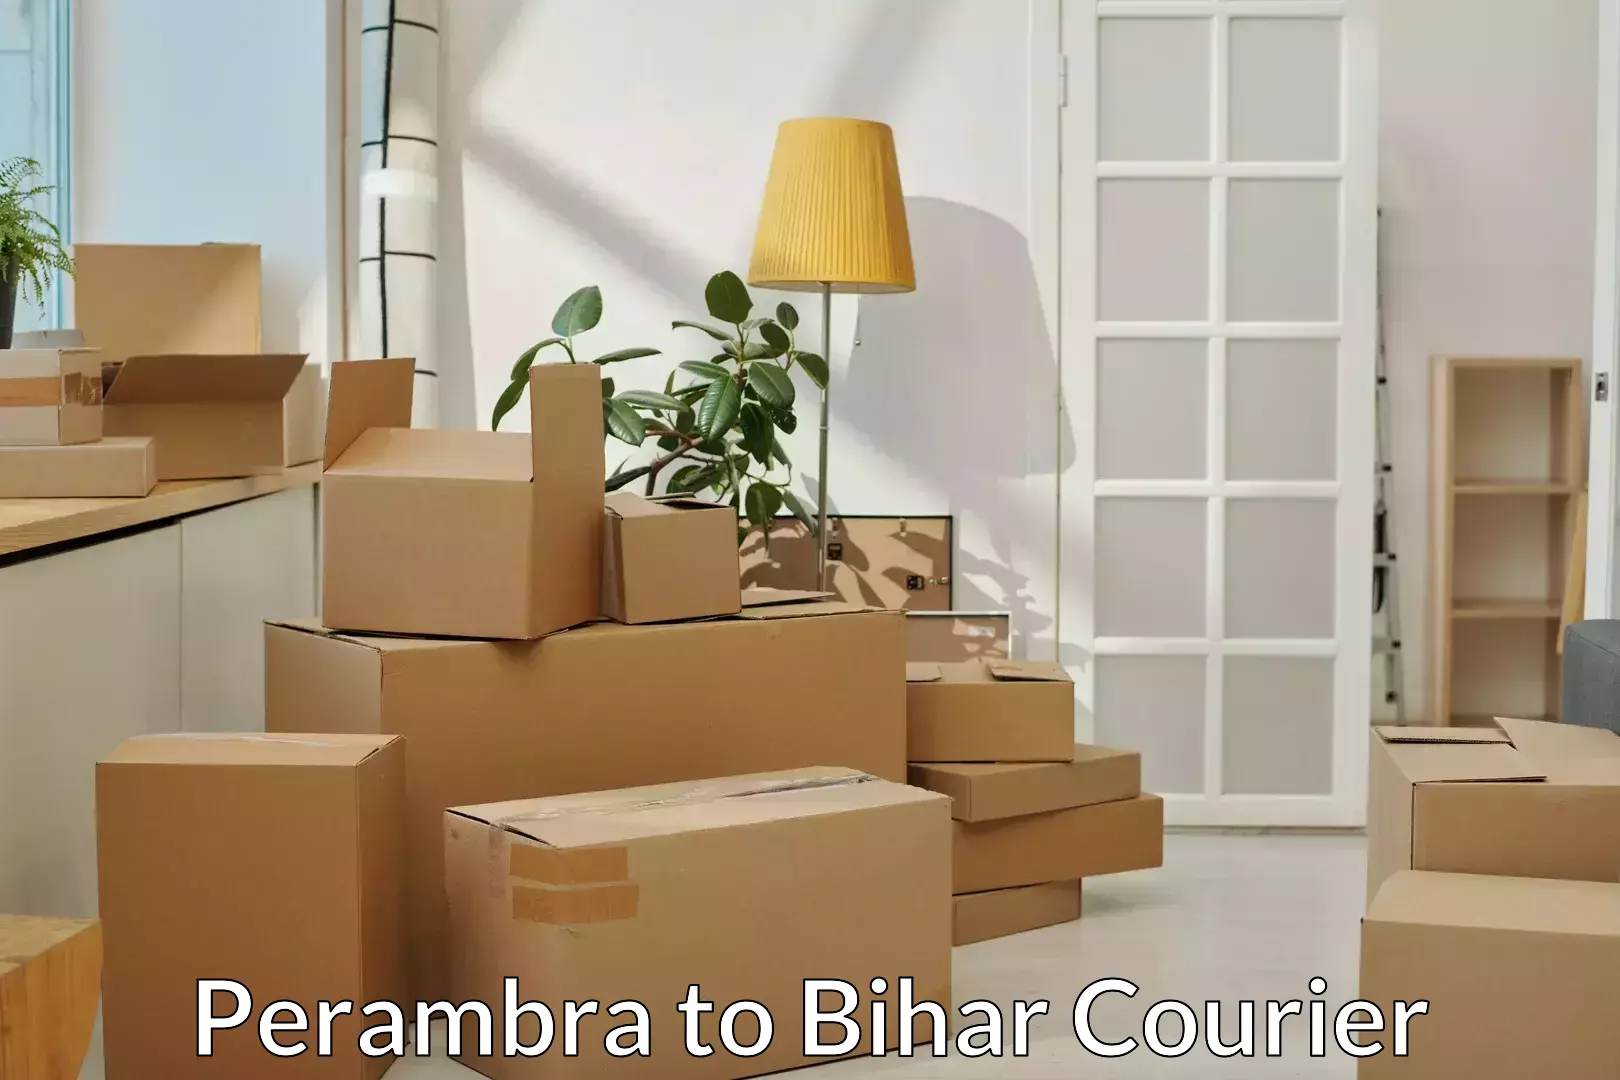 Furniture moving and handling Perambra to Khodaganj